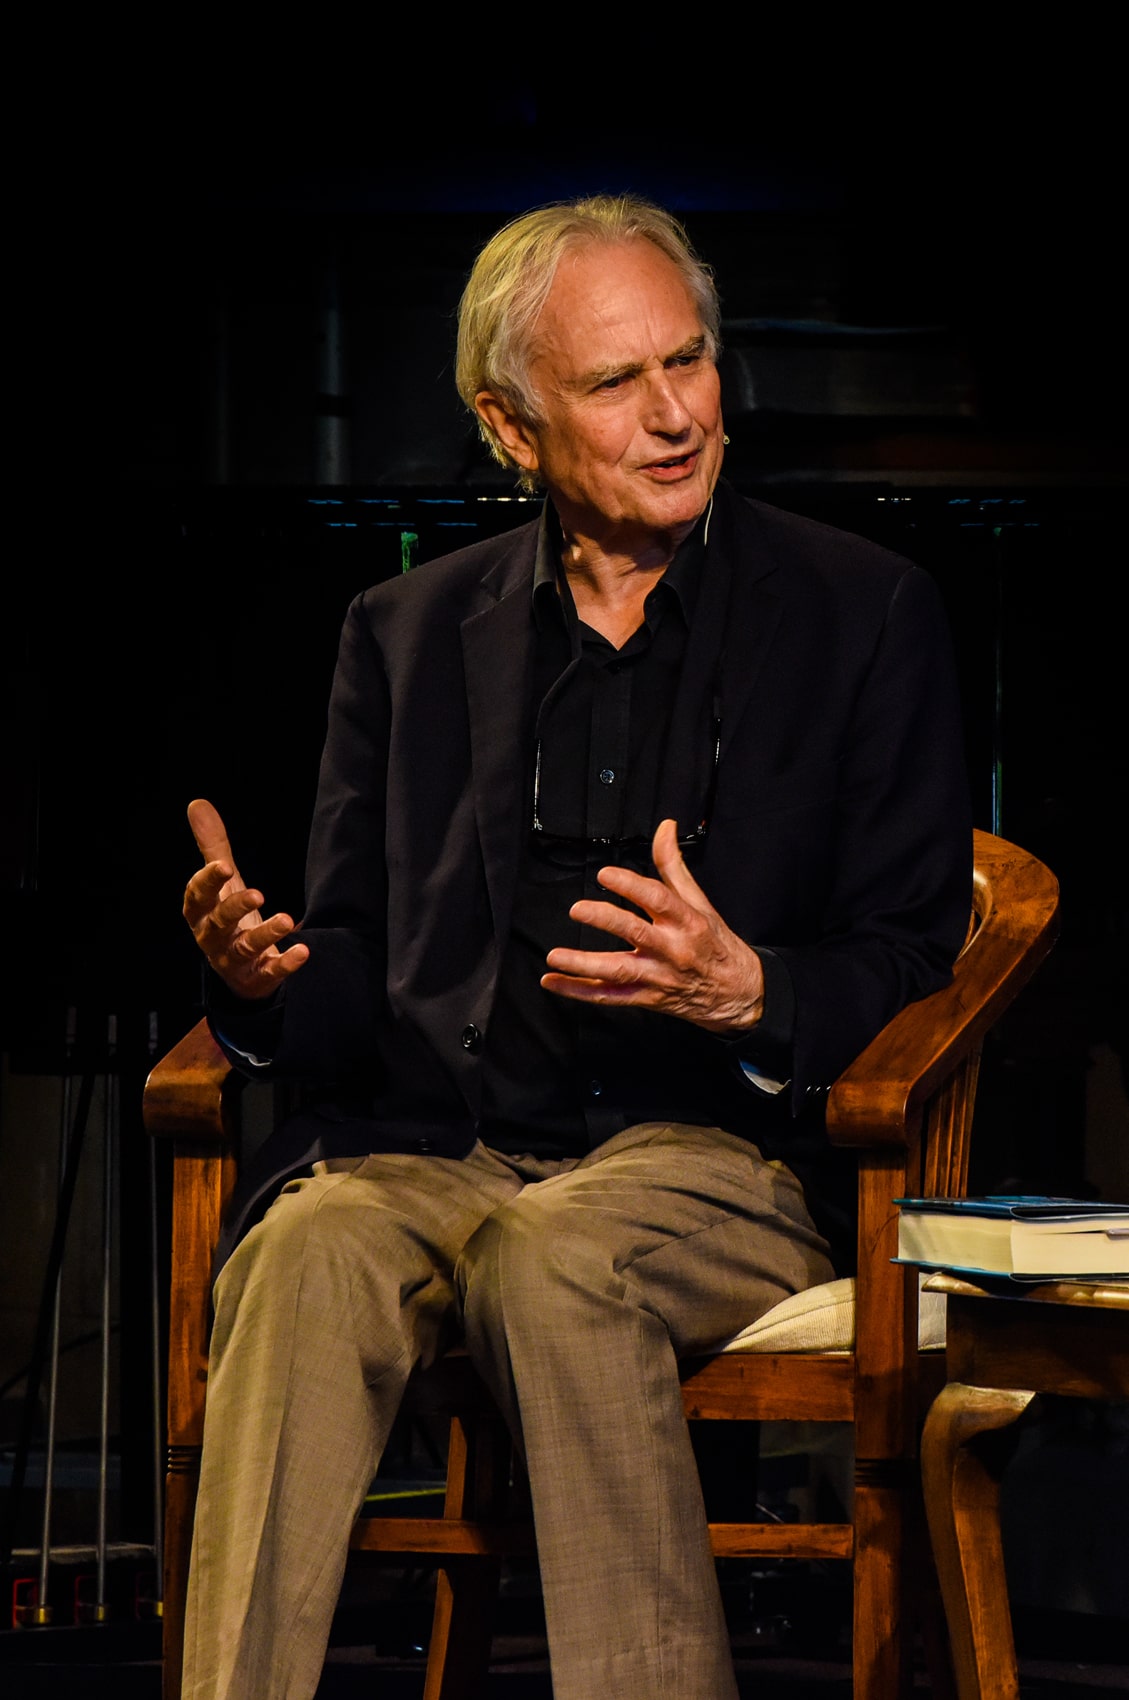 Richard Dawkins on stage